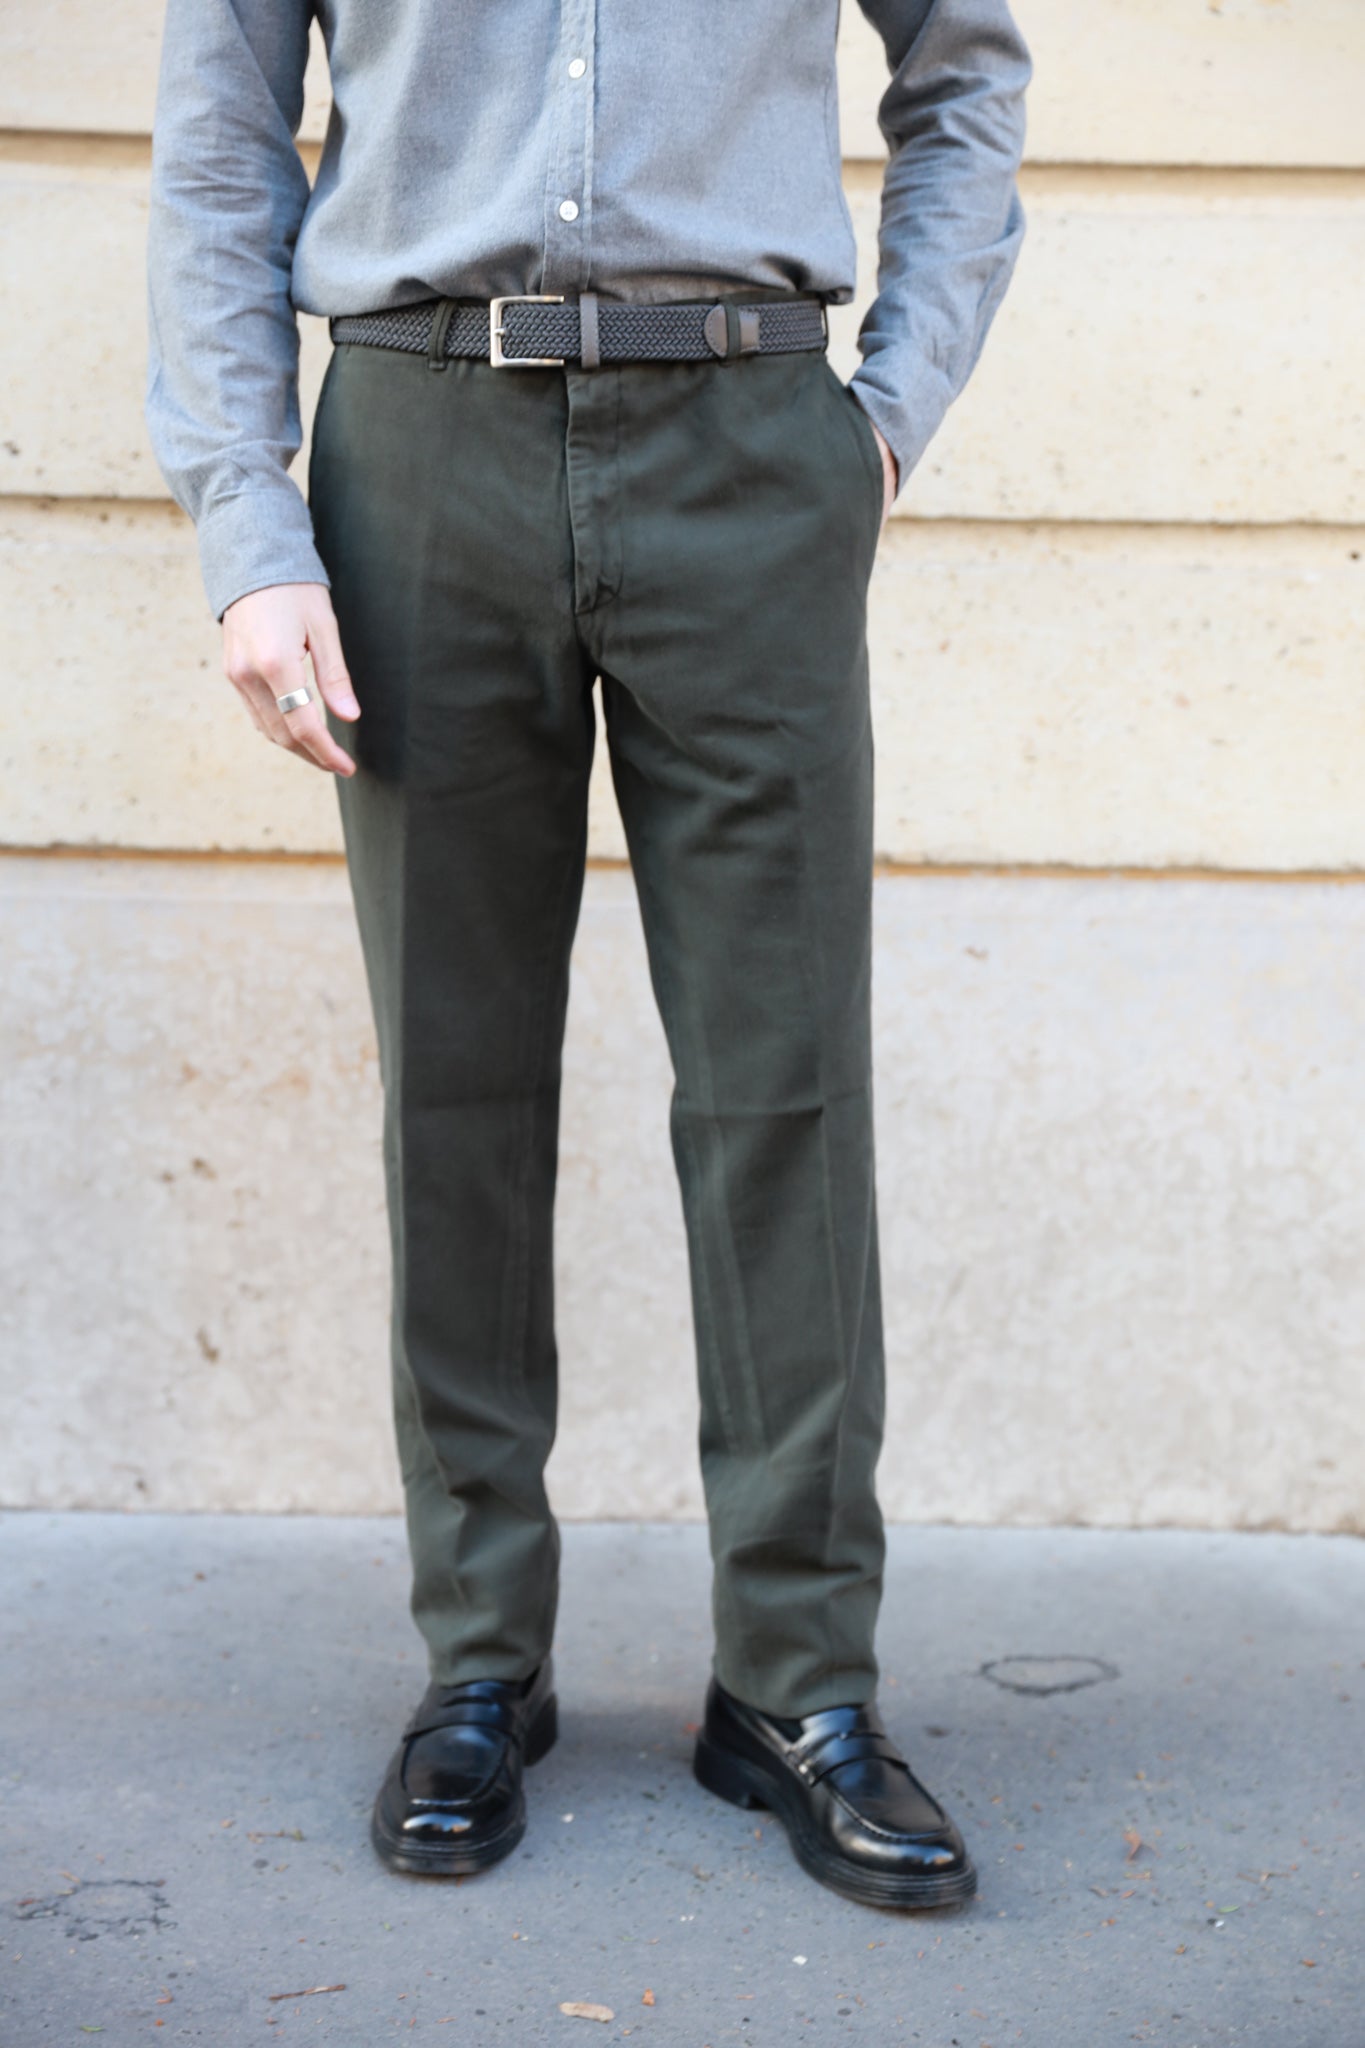 Pantalon en coton bio homme.Coupe classique et tissu extensible kaki